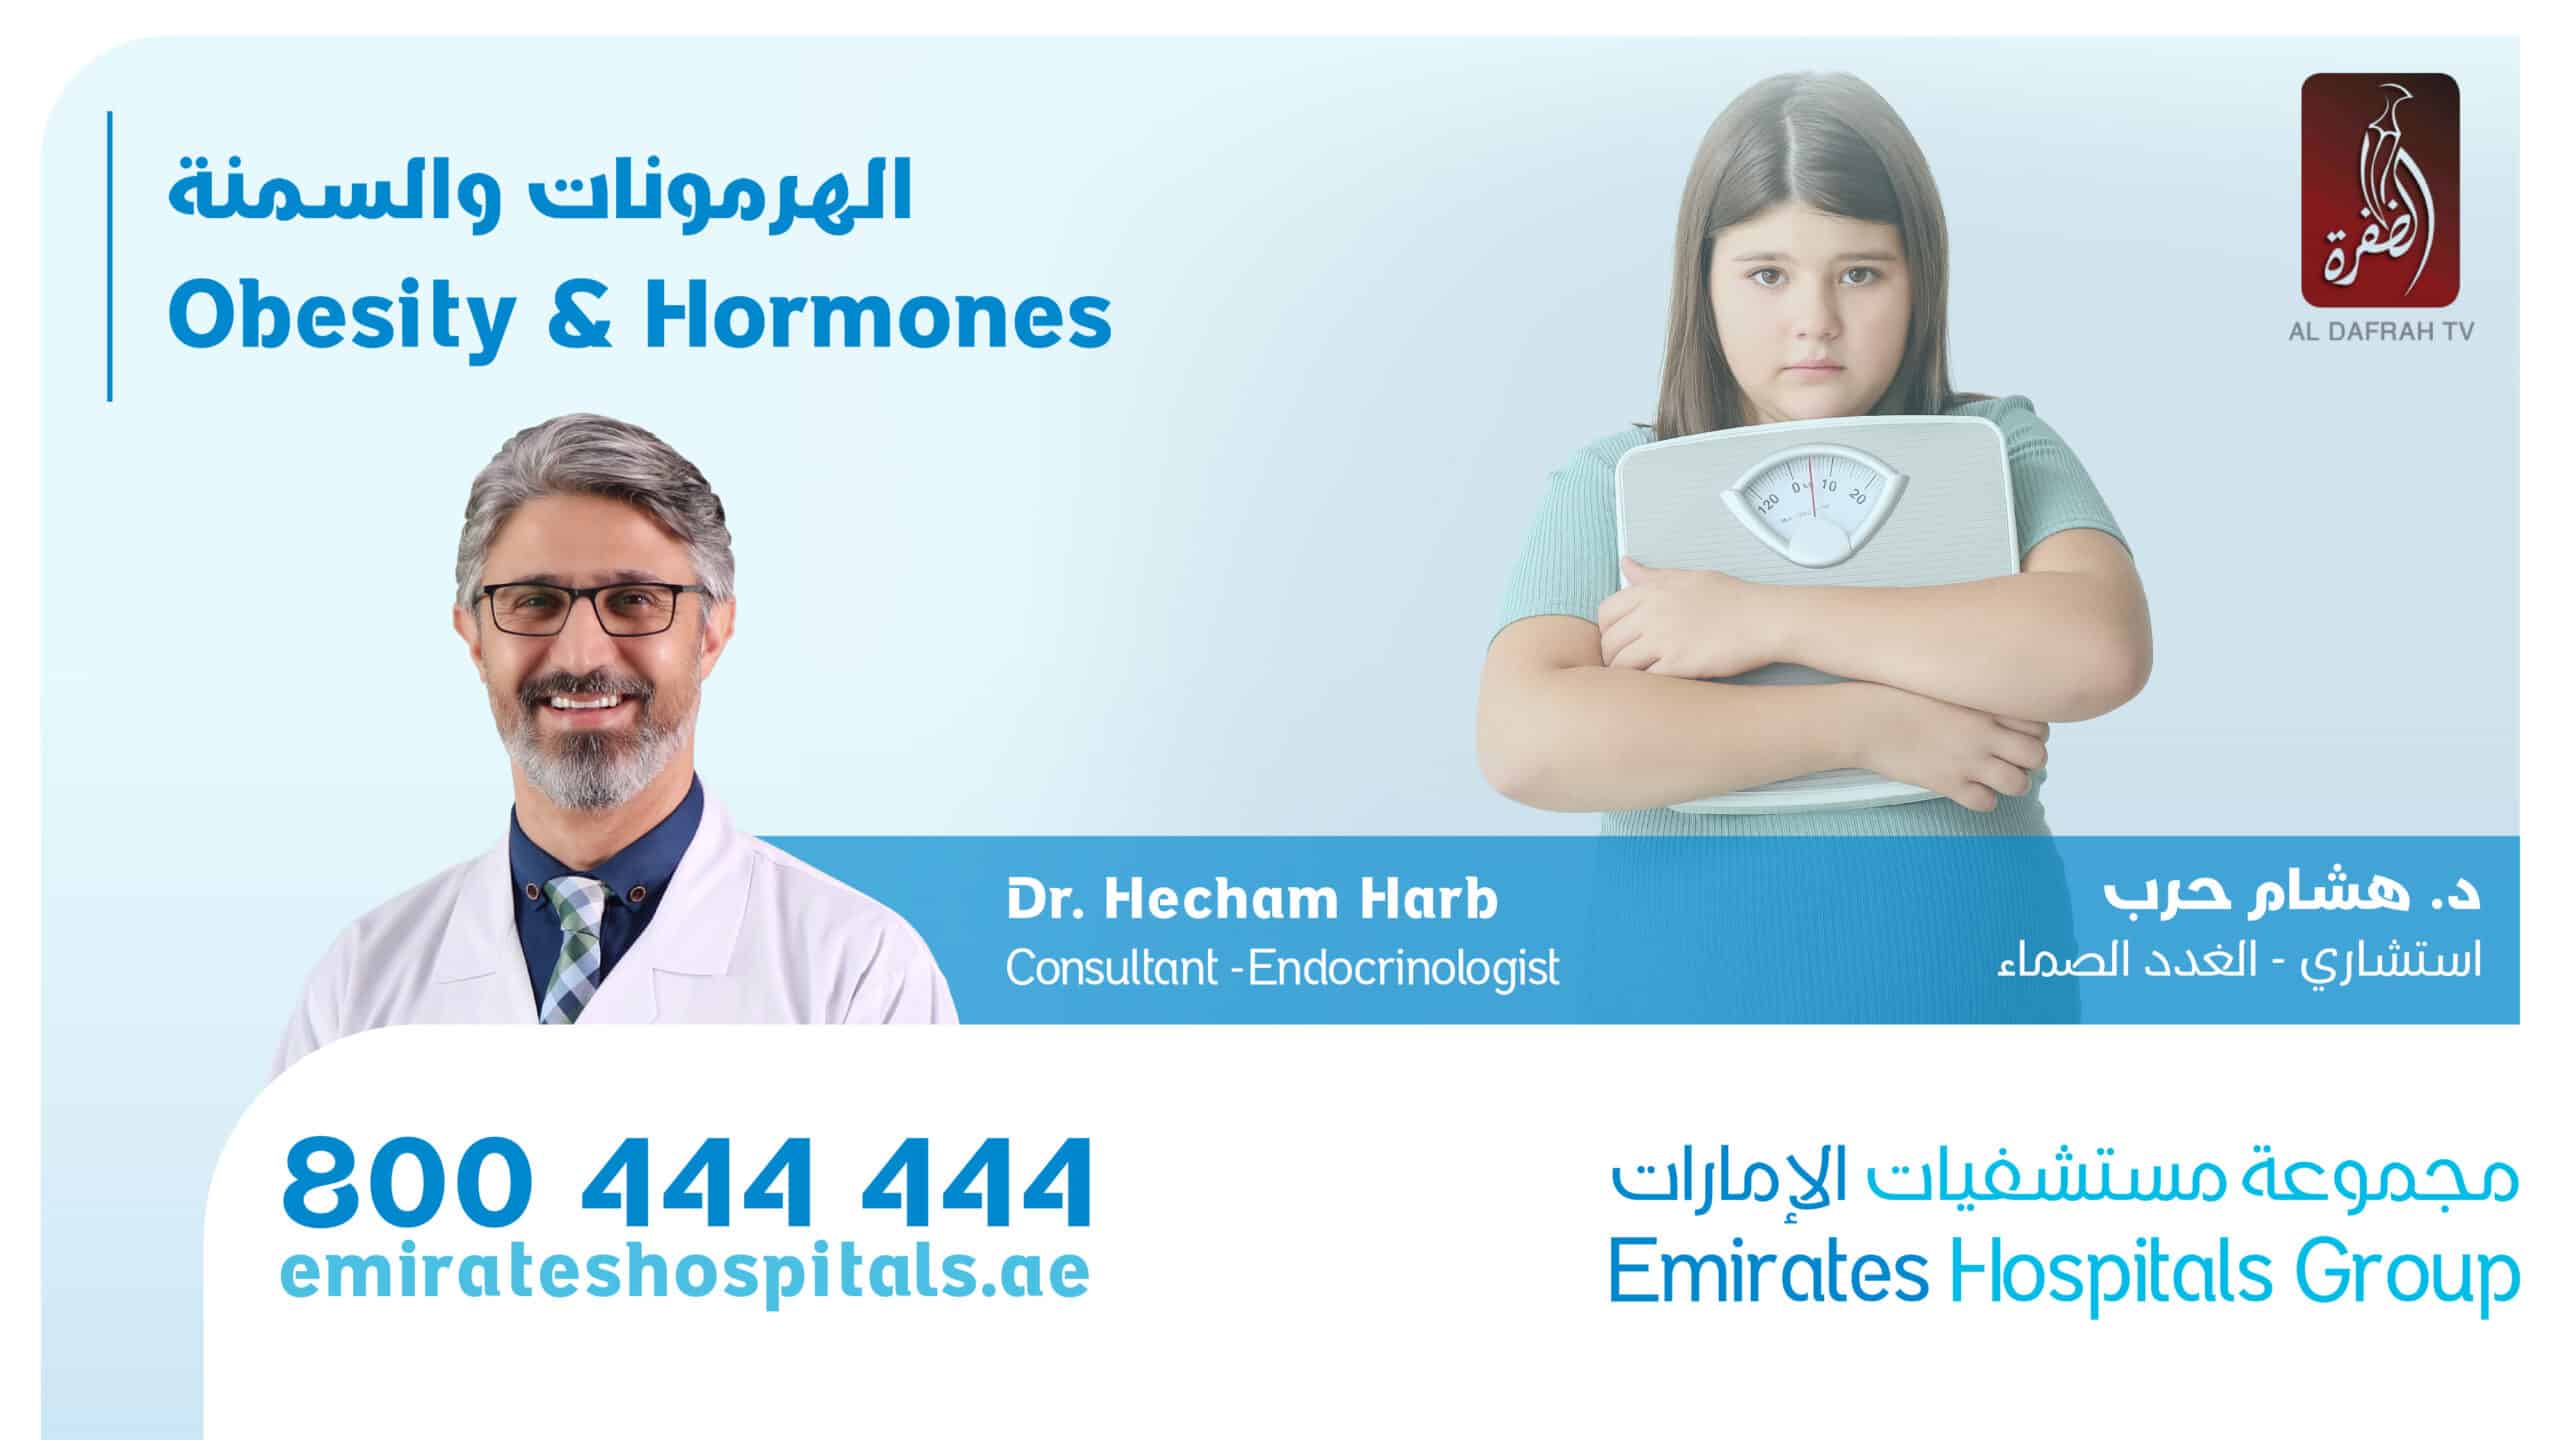 Obesity & Hormones | Dr. Hecham Harb , Consultant Endocrinologist